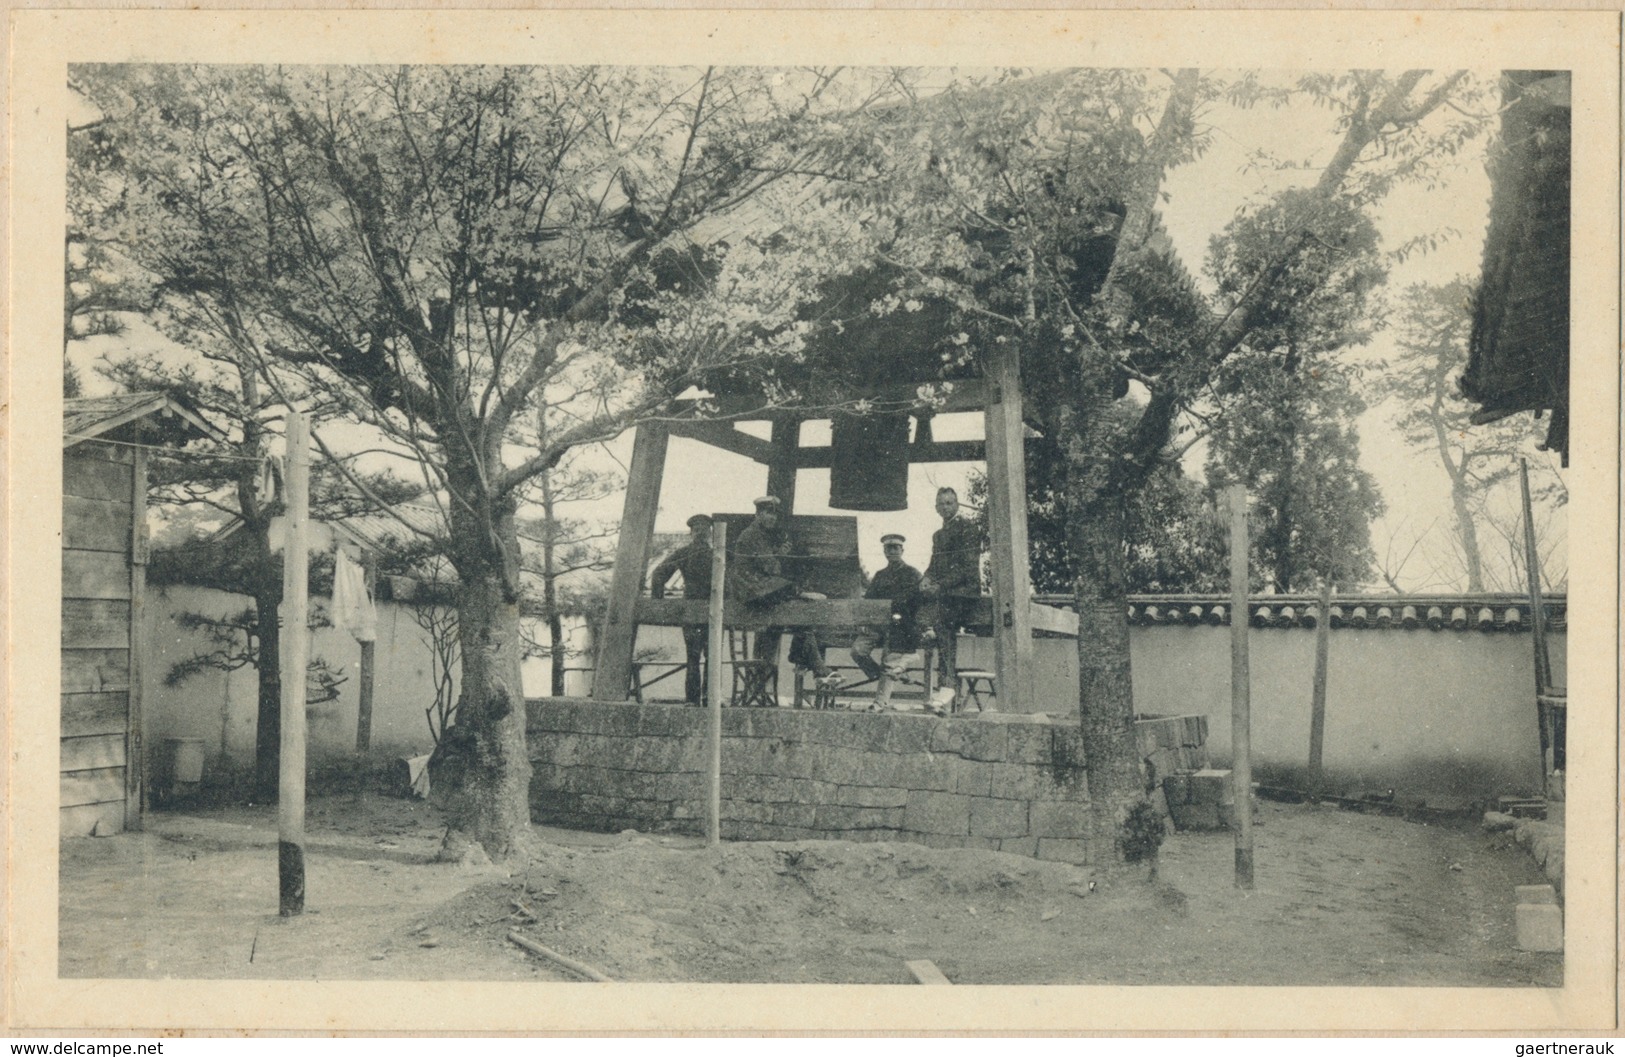 Lagerpost Tsingtau: 1914/15 (ca.), original photo-album (195x127 mm) in leporello style inc. 29 phot